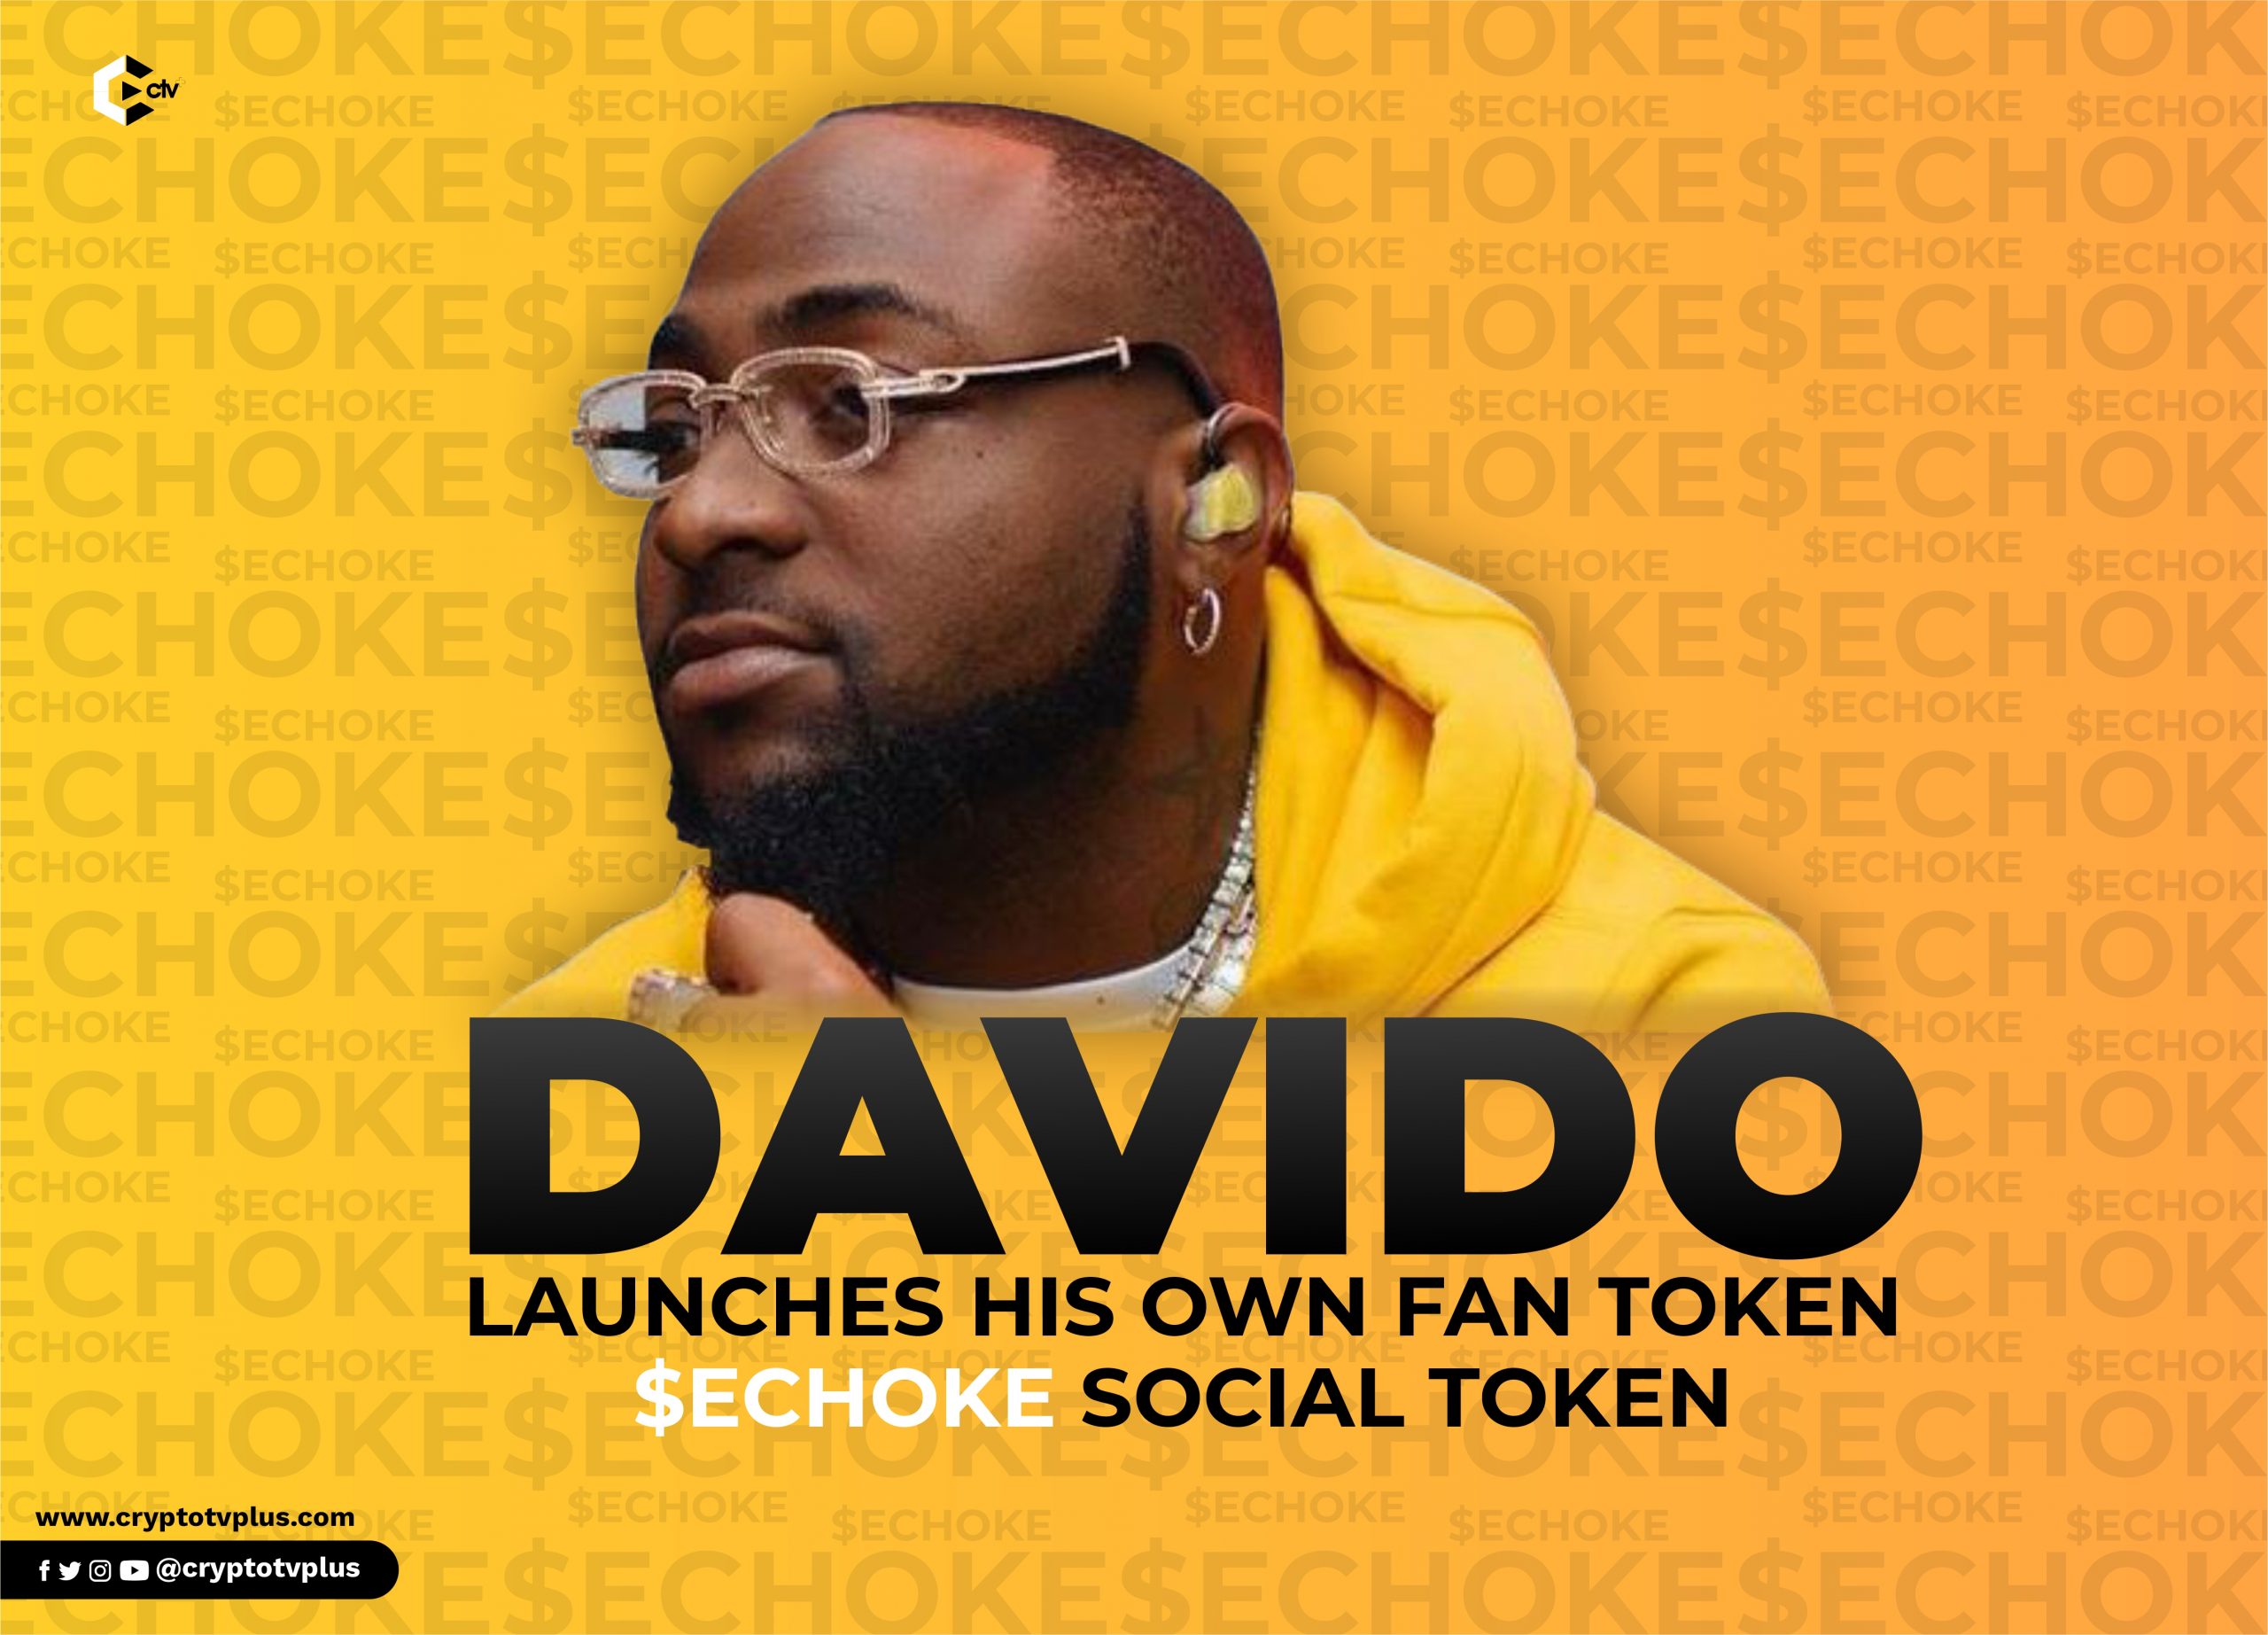 Davido Launches $Echoke Social Fan token